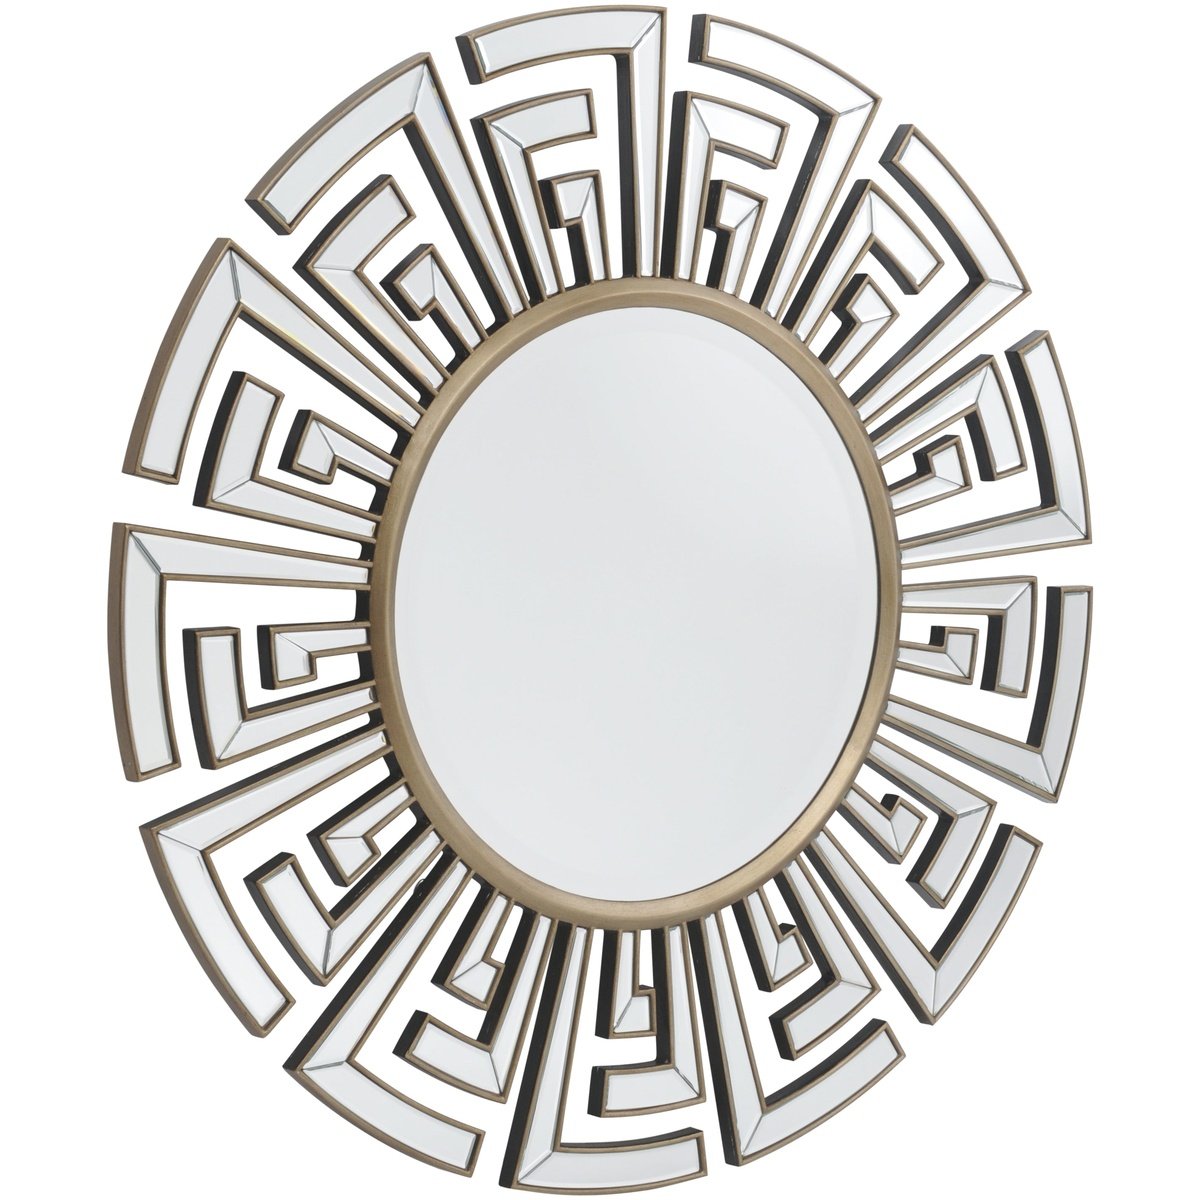 Selfridge Deco Round Mirror